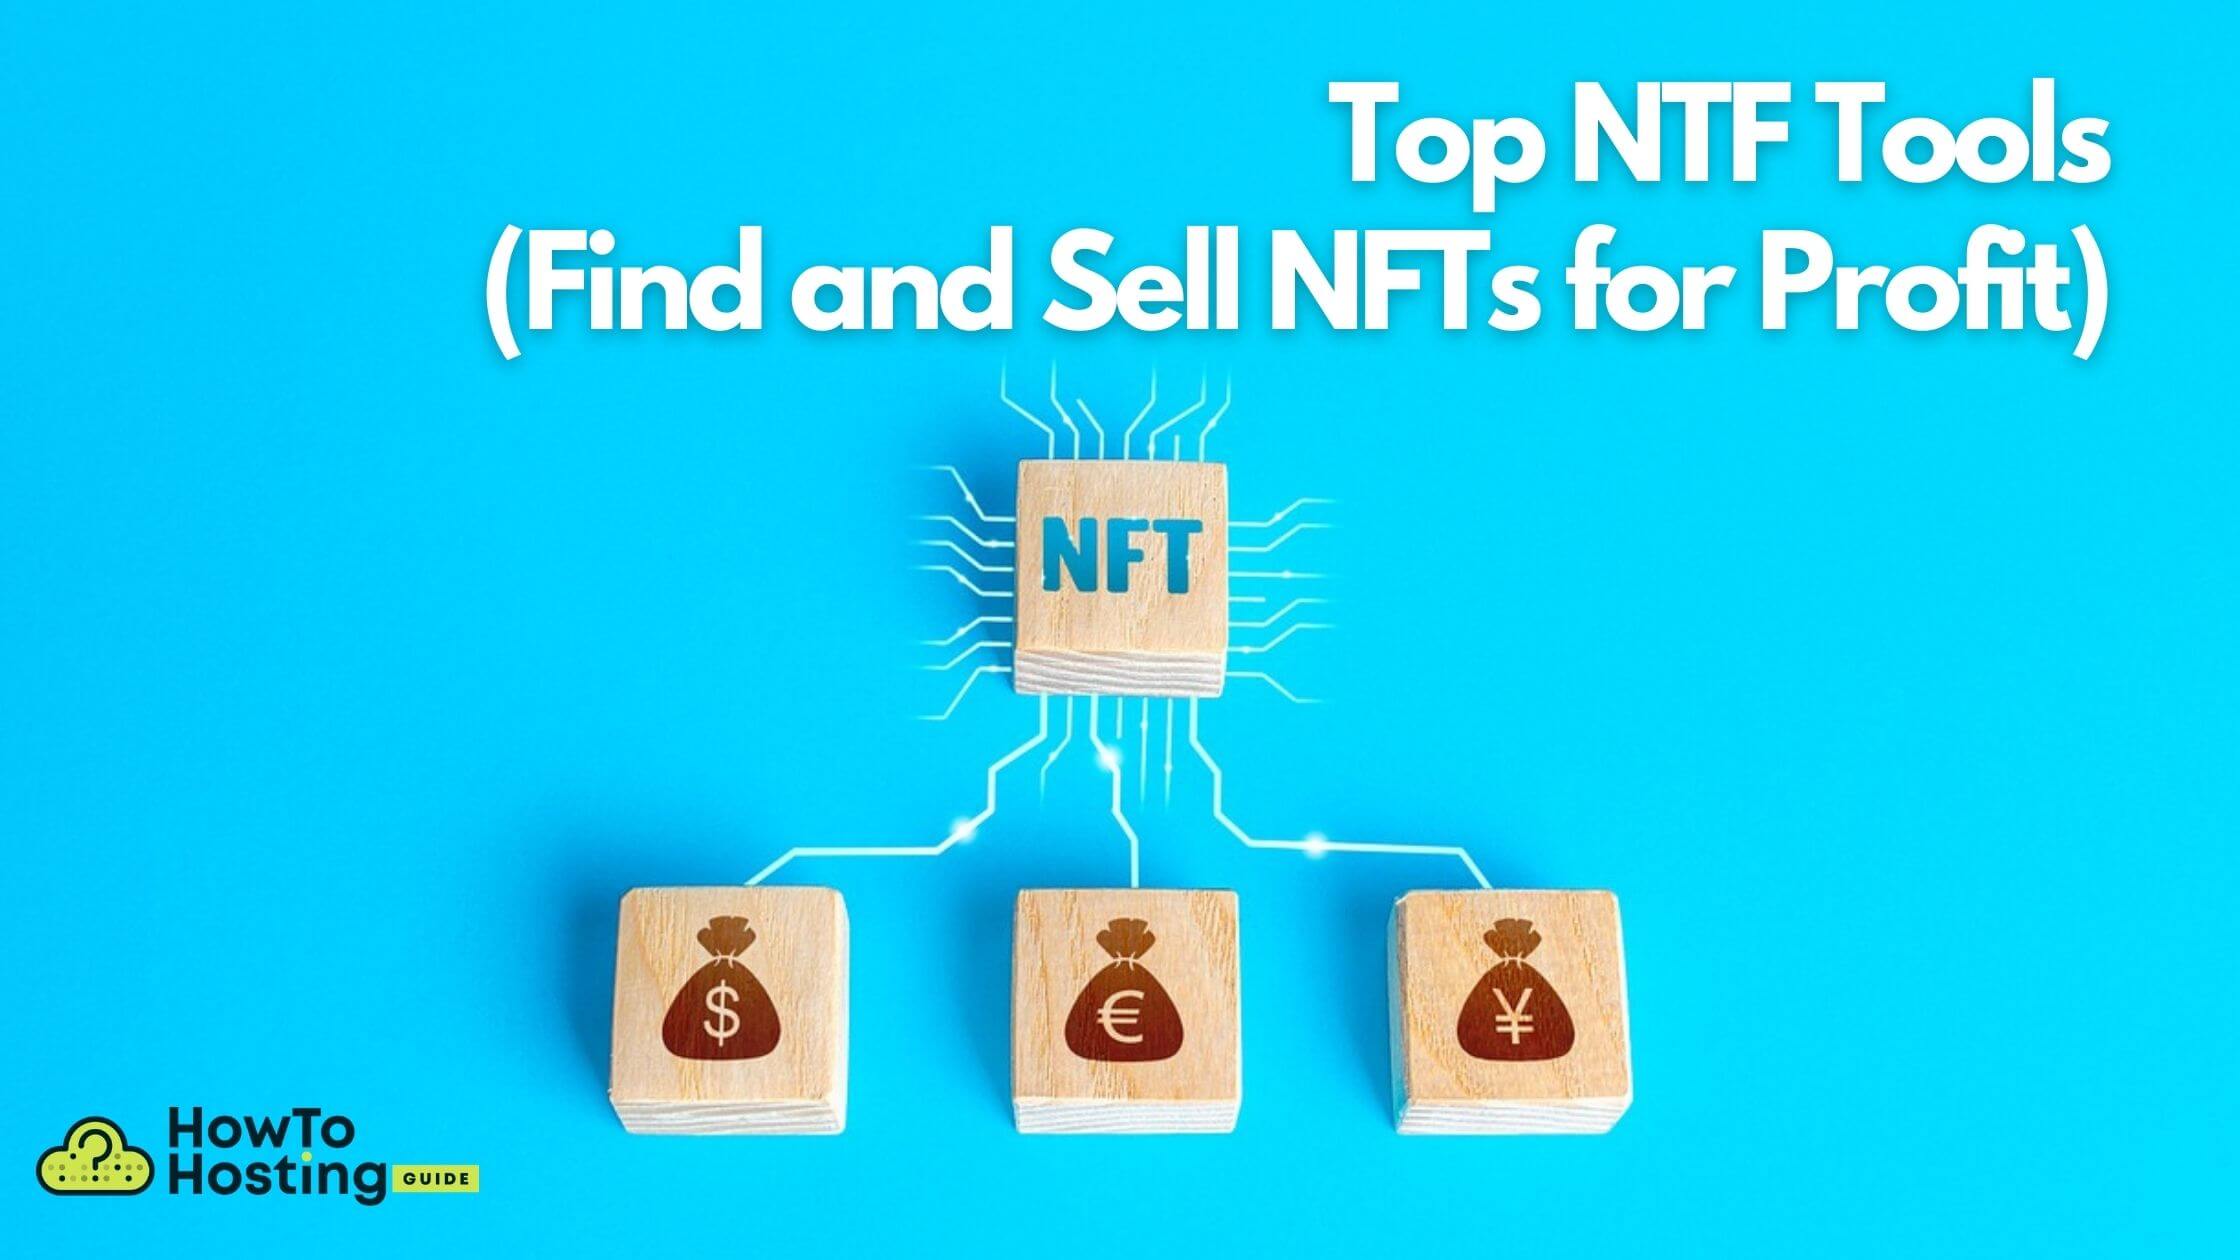 i-migliori-strumenti-nft-per-trovare-la-vendita-nft-a-profitto-hth-guide